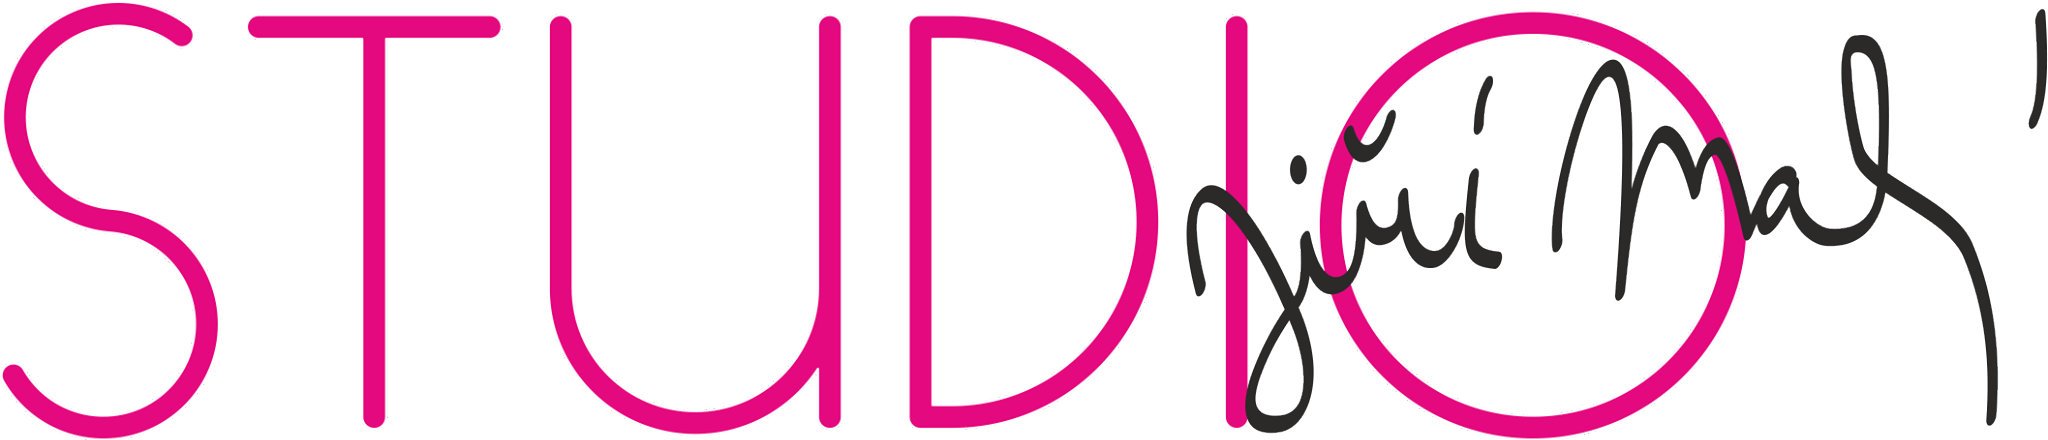 logo_Jiri_Maly